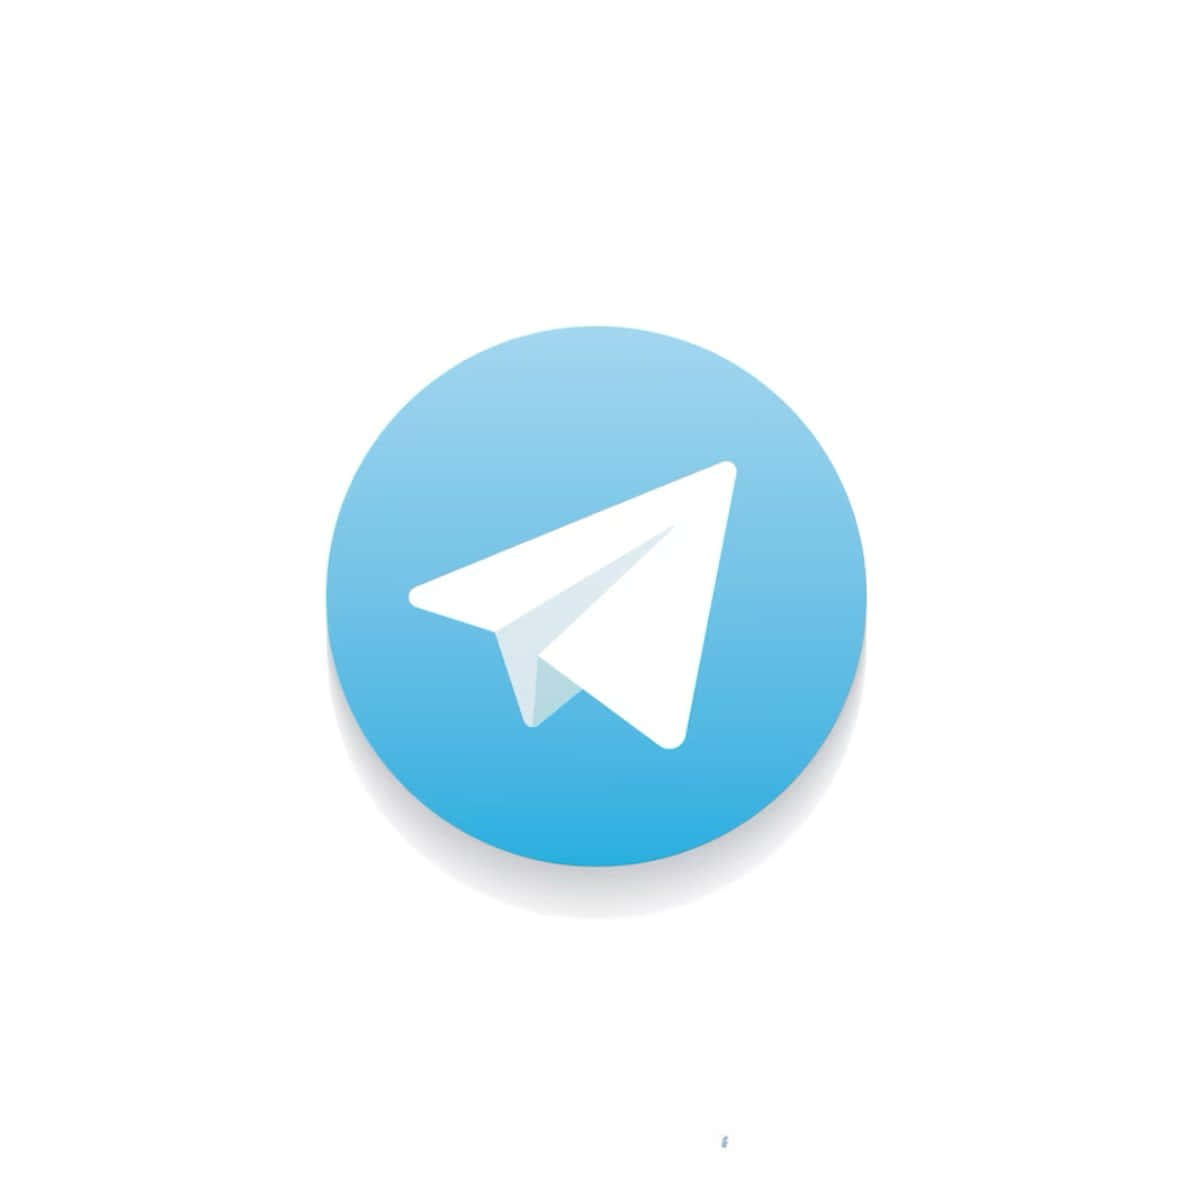 Etblåt Og Hvidt Telegram-logo.